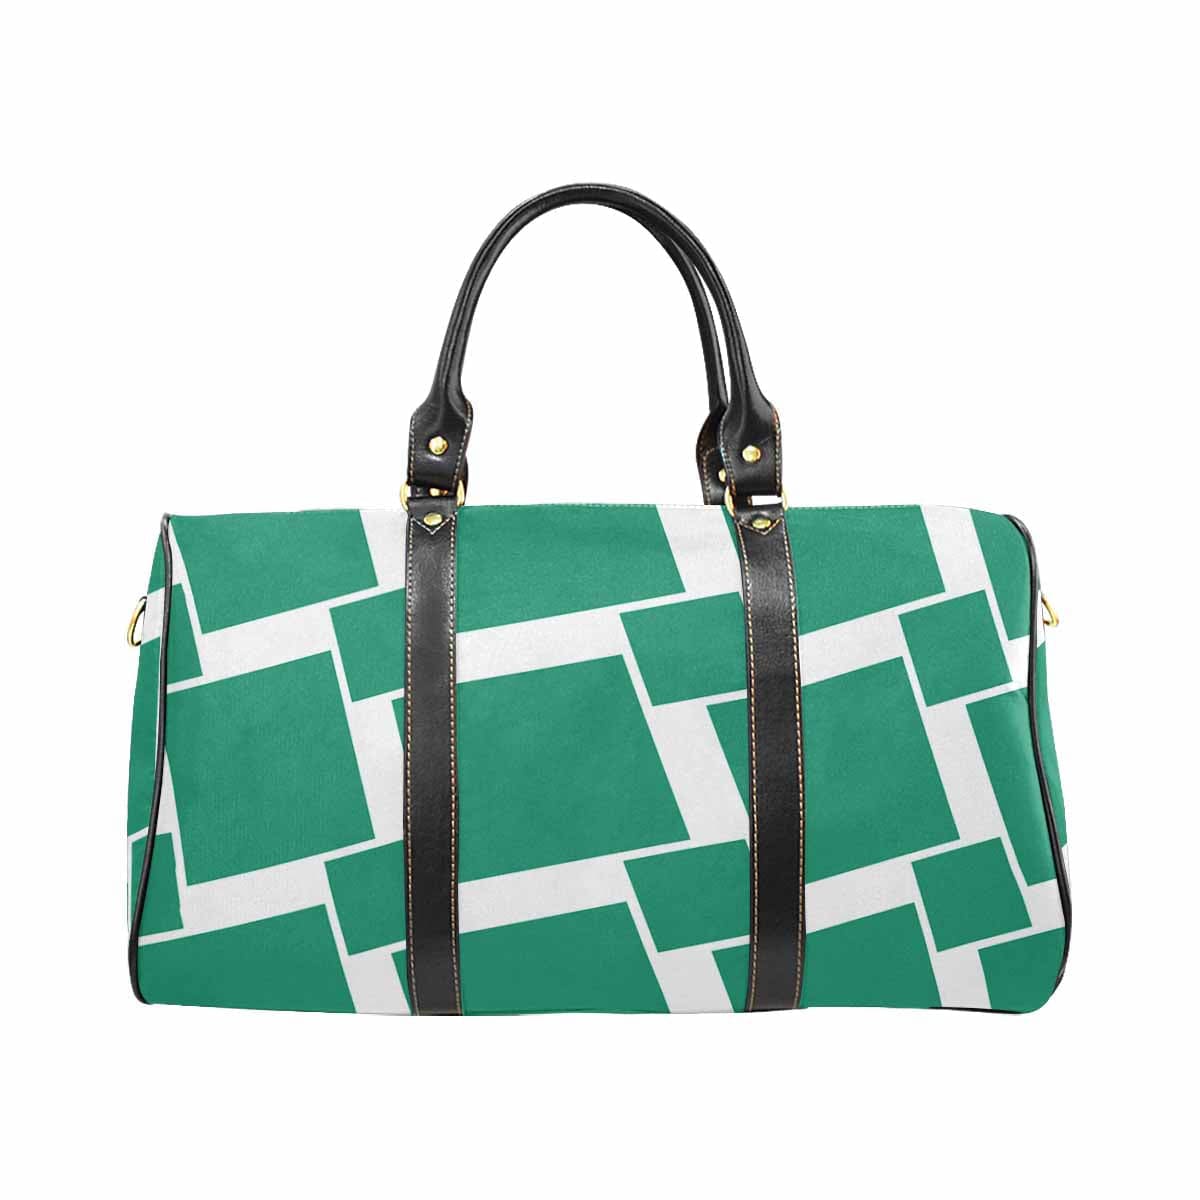 Travel Bag Adjustable Shoulder Strap Carry On Bag Green - Bags | Travel Bags